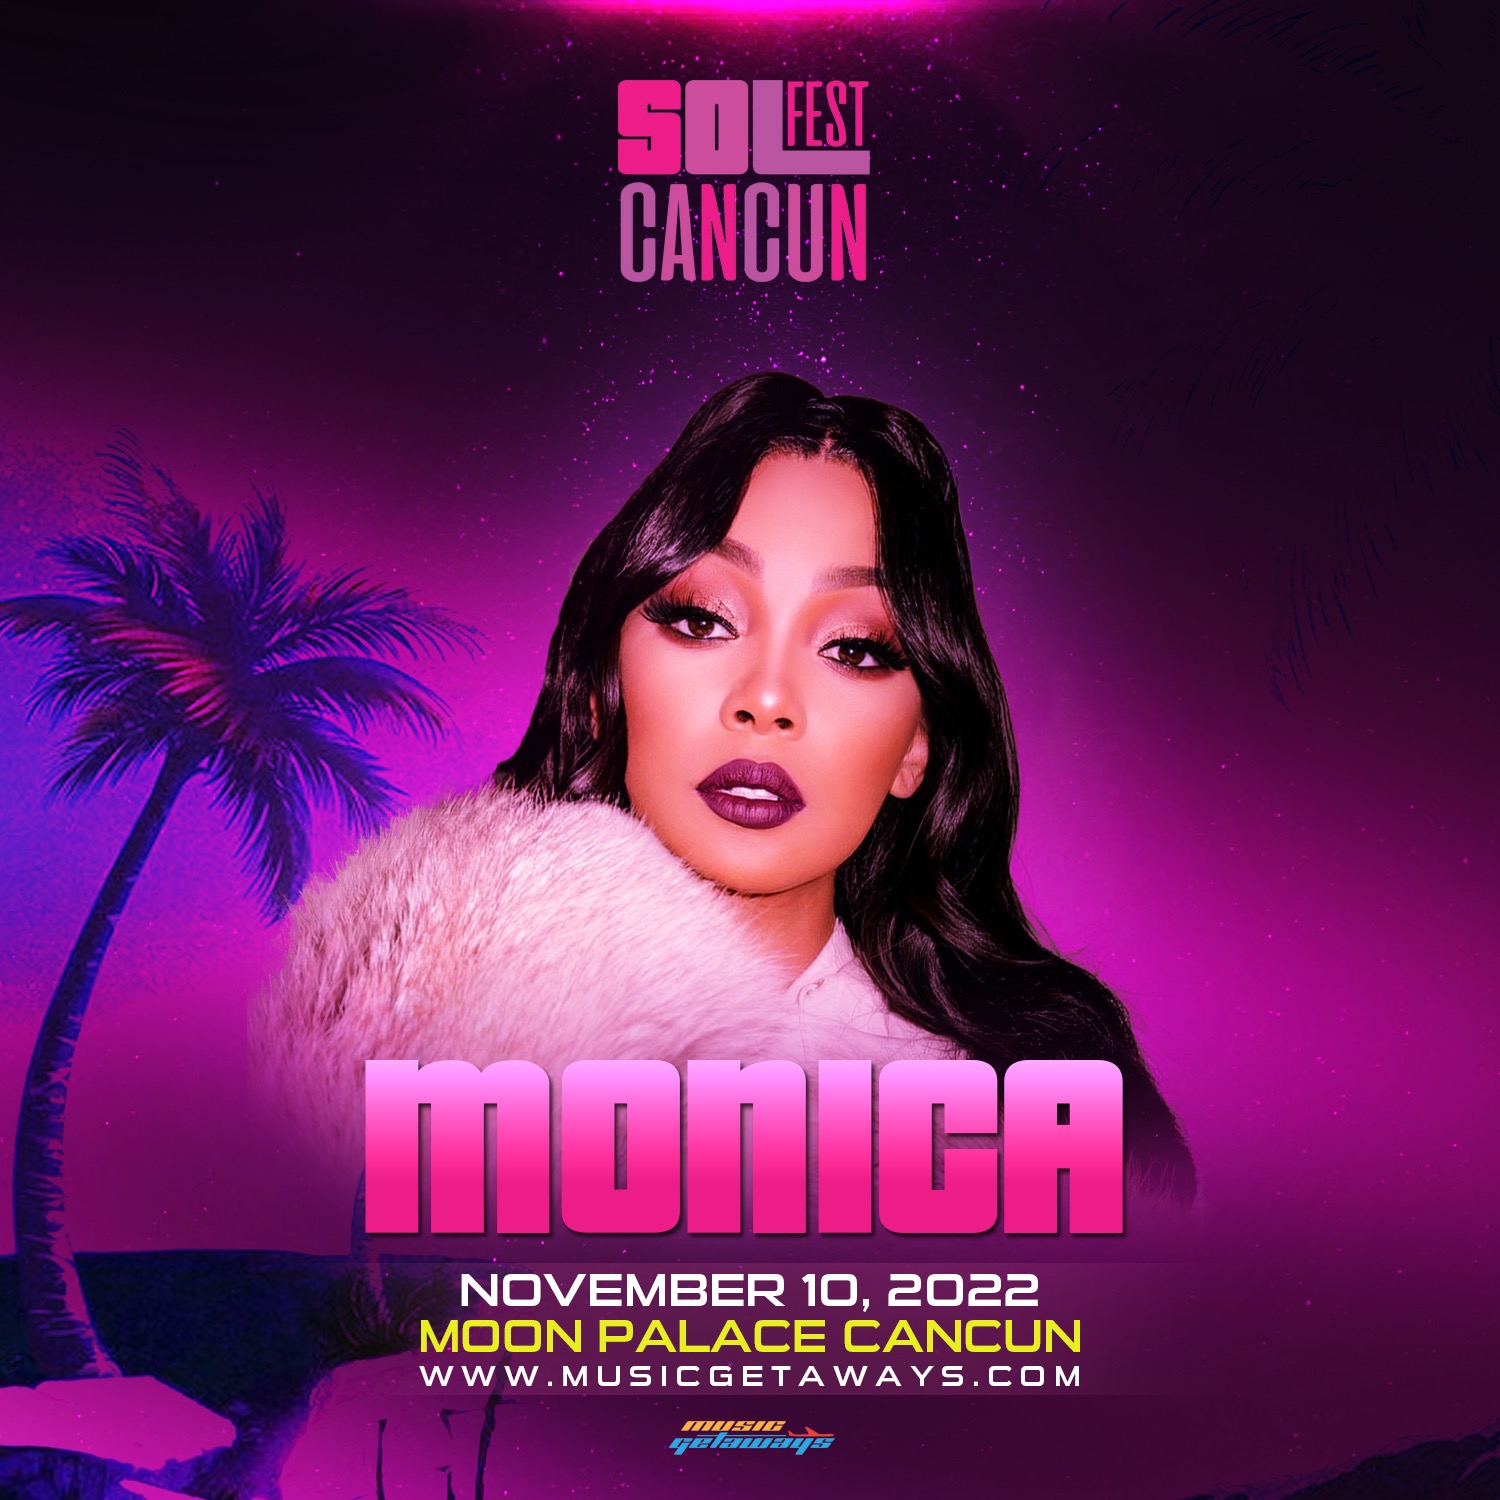 Monica Scheduled For SolFest Cancun